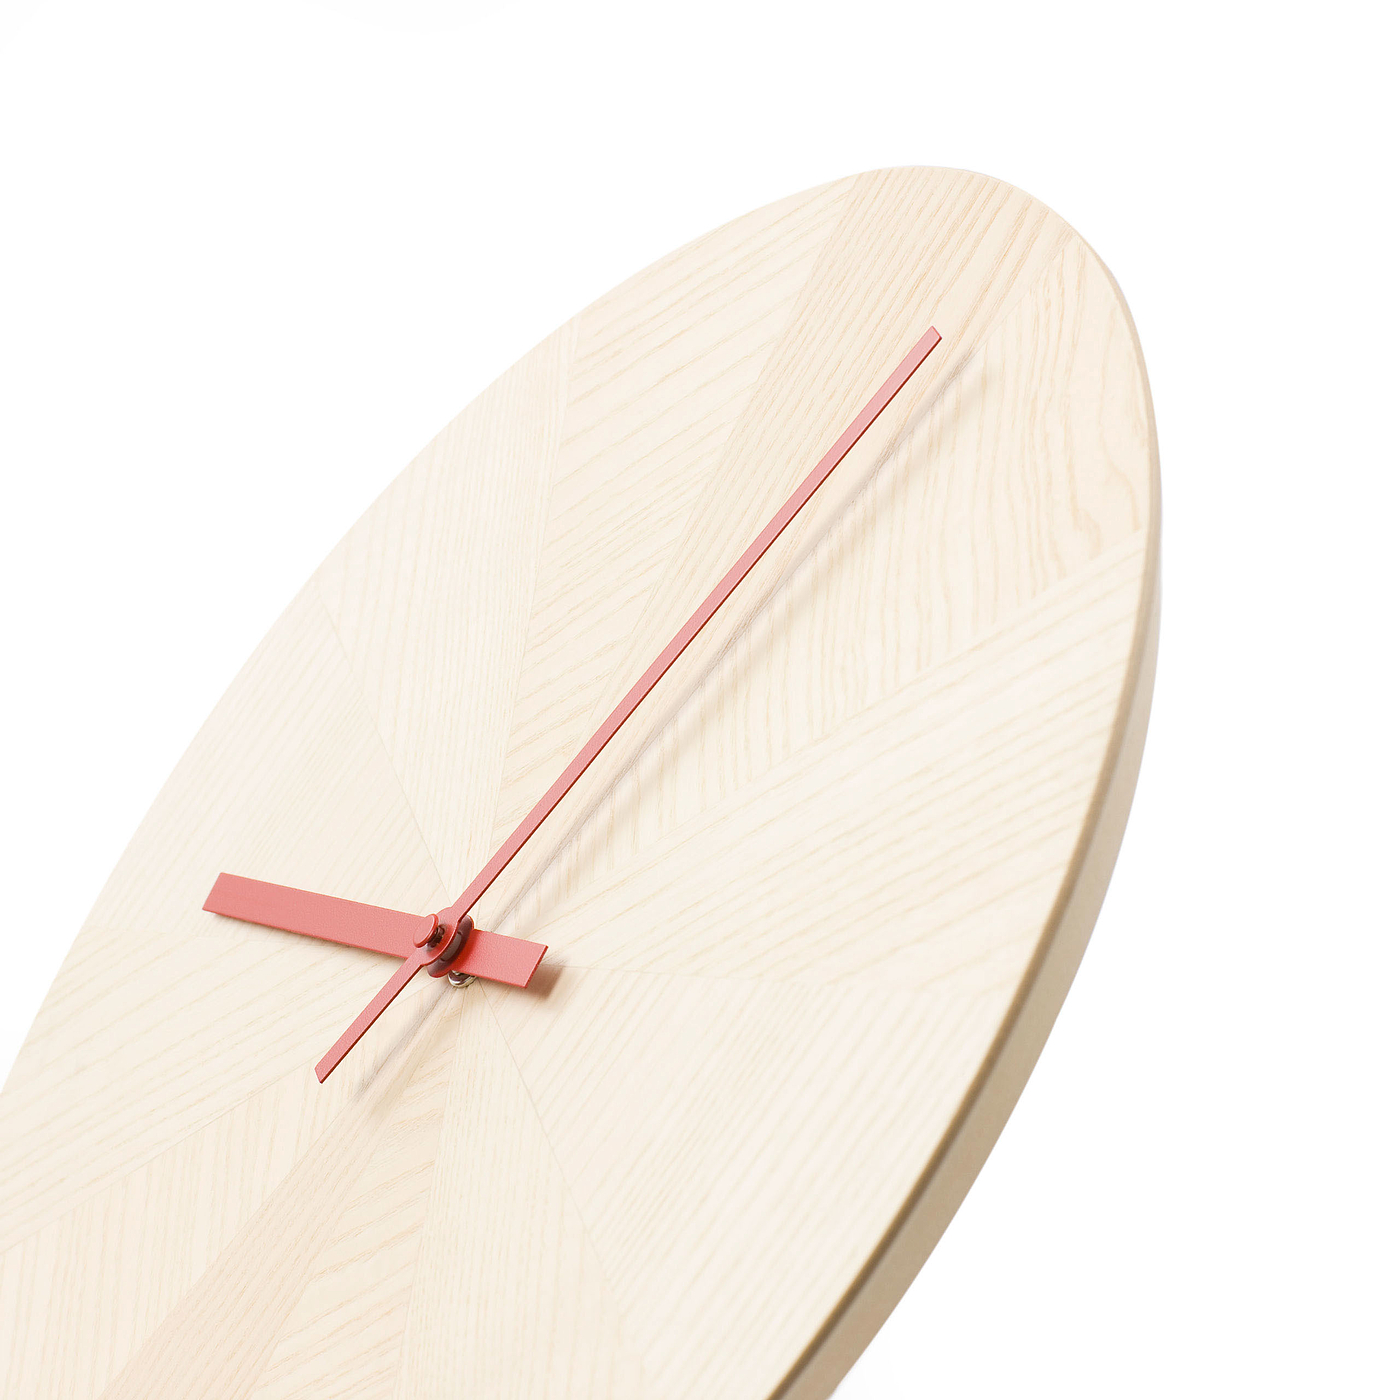 钟，时间，木质，